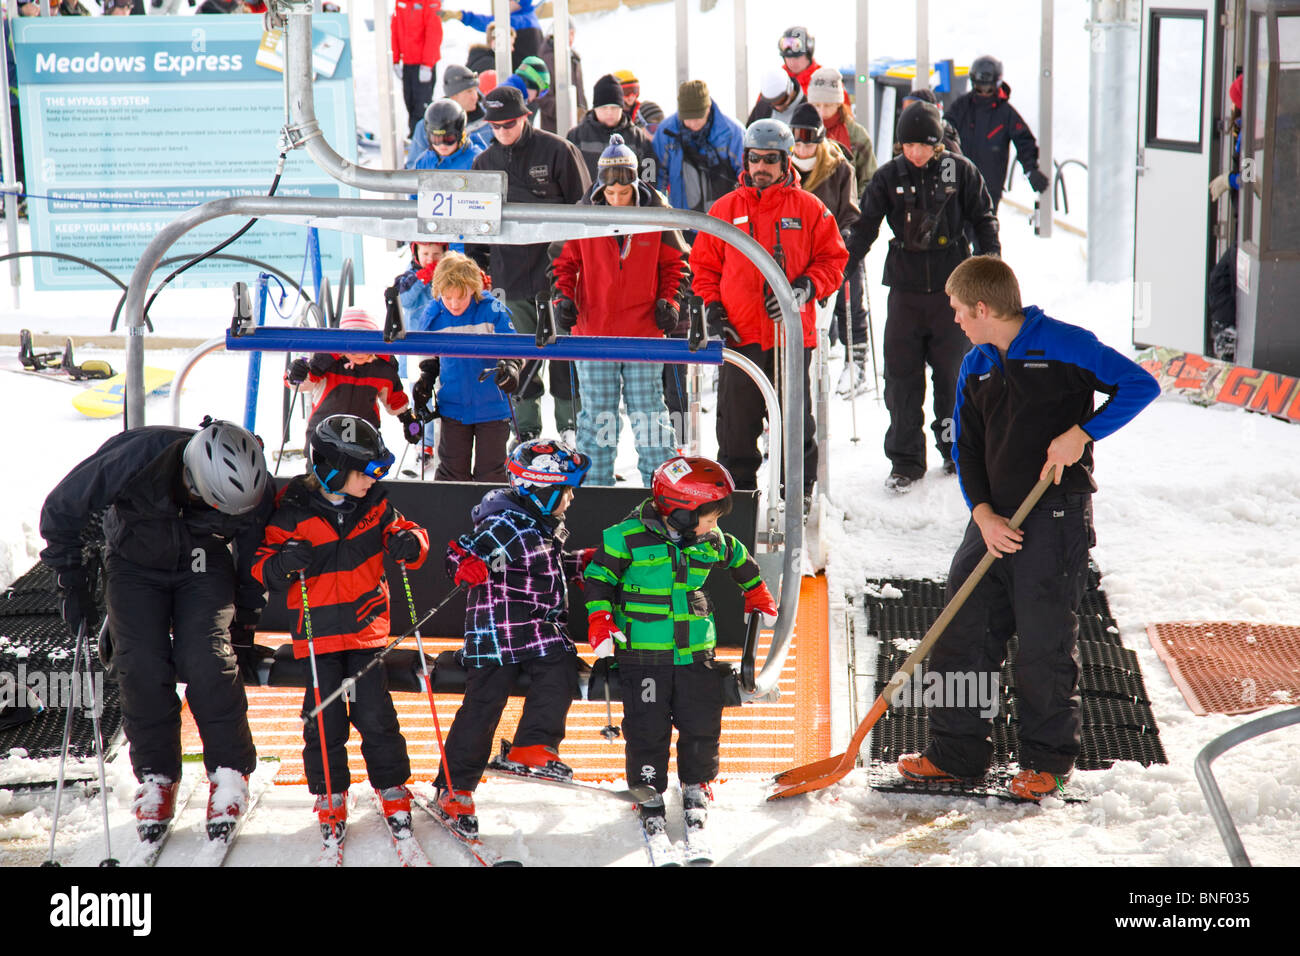 Drei Kinder und ein Erwachsener steigen auf den Meadows Express Sessellift im Coronet Peak Ski Resort, Queenstown, Neuseeland Stockfoto